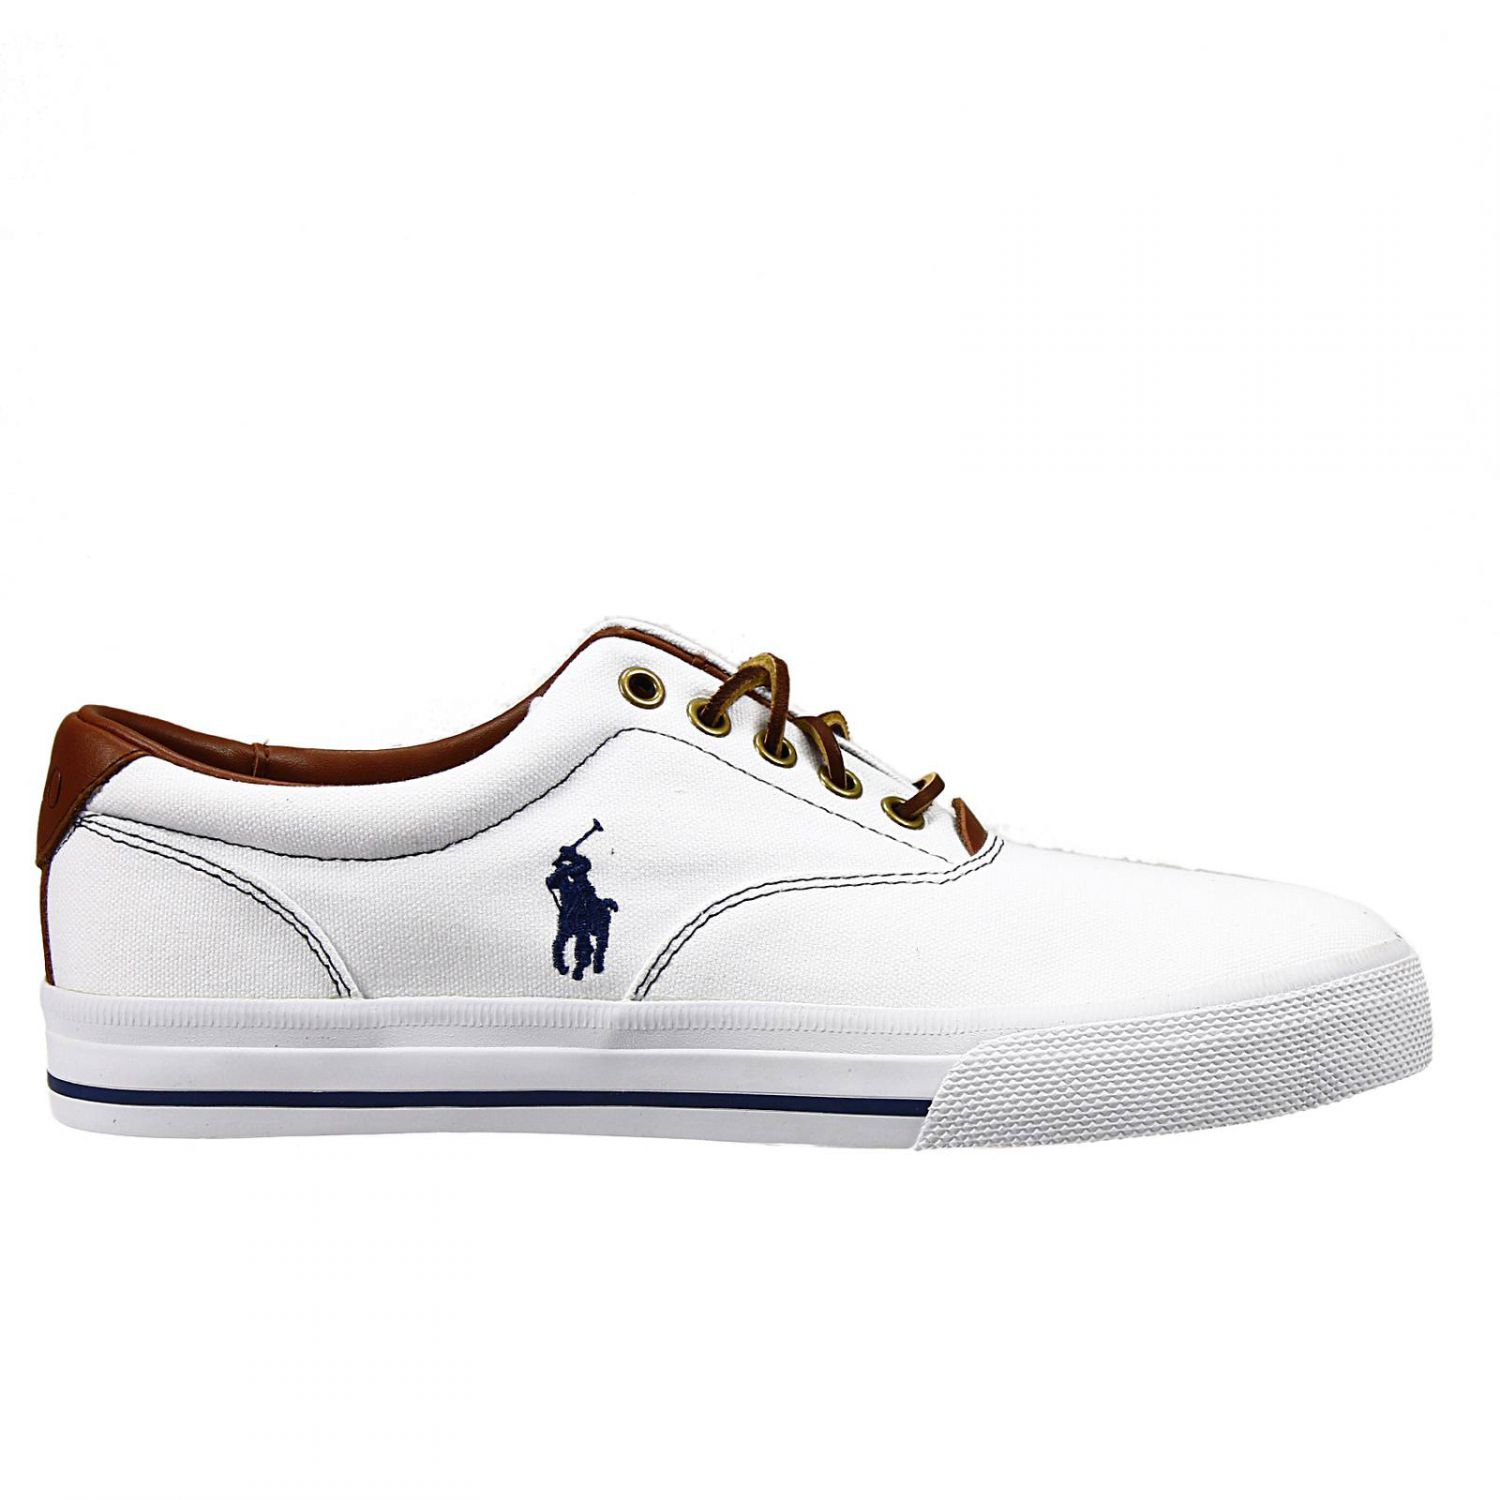 Ralph Lauren Shoes Vaughn-Ne Sneakers Canvas in White for Men - Lyst